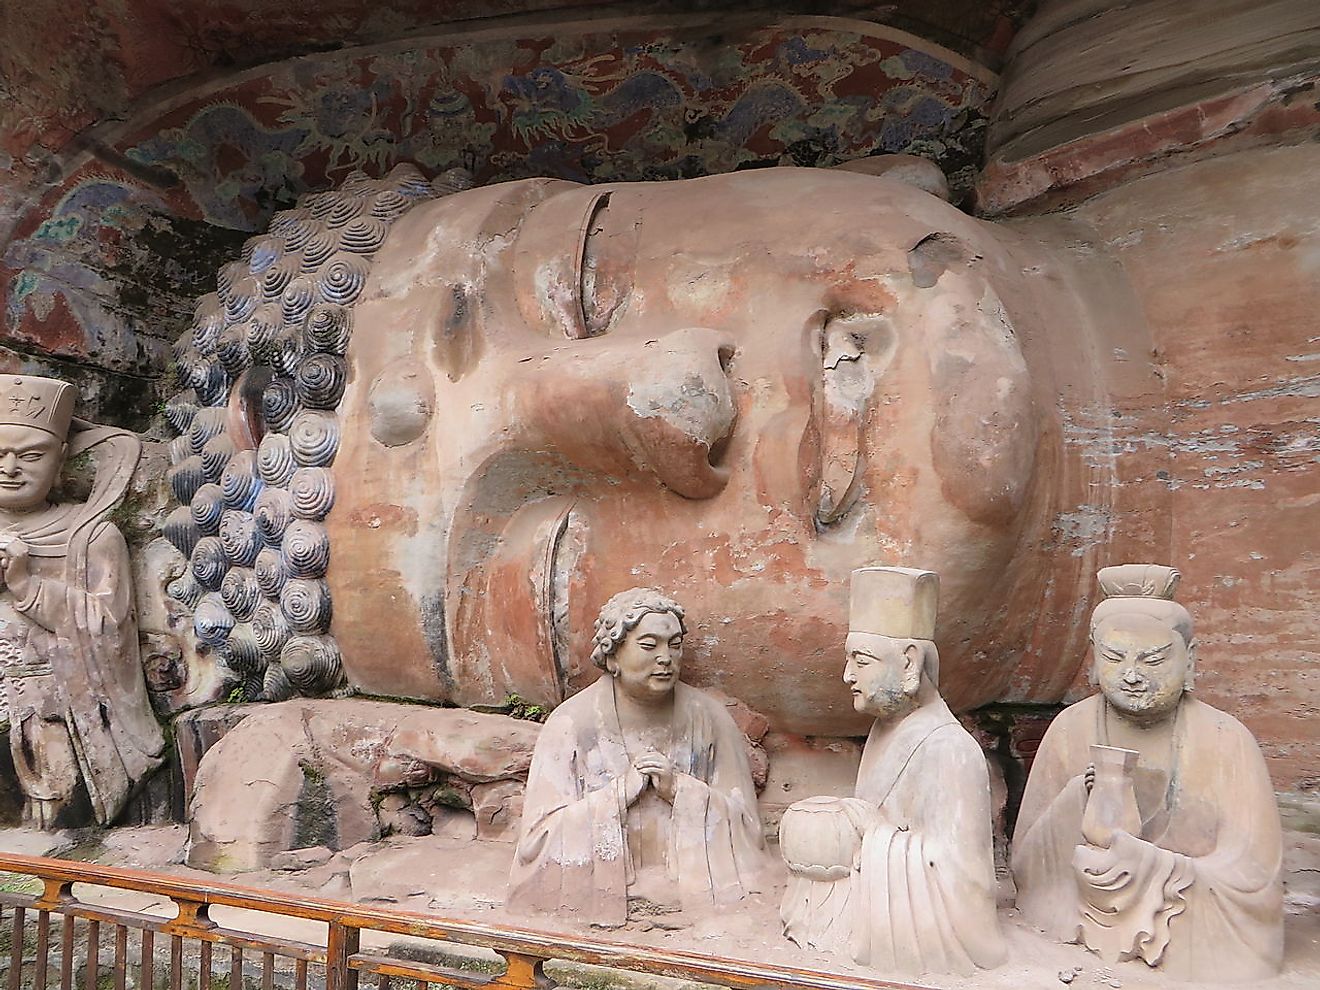 Lying Buddha, Dazu Rock Carvings, Chongqing, China. Image credit: Jpbowen/Wikimedia.org